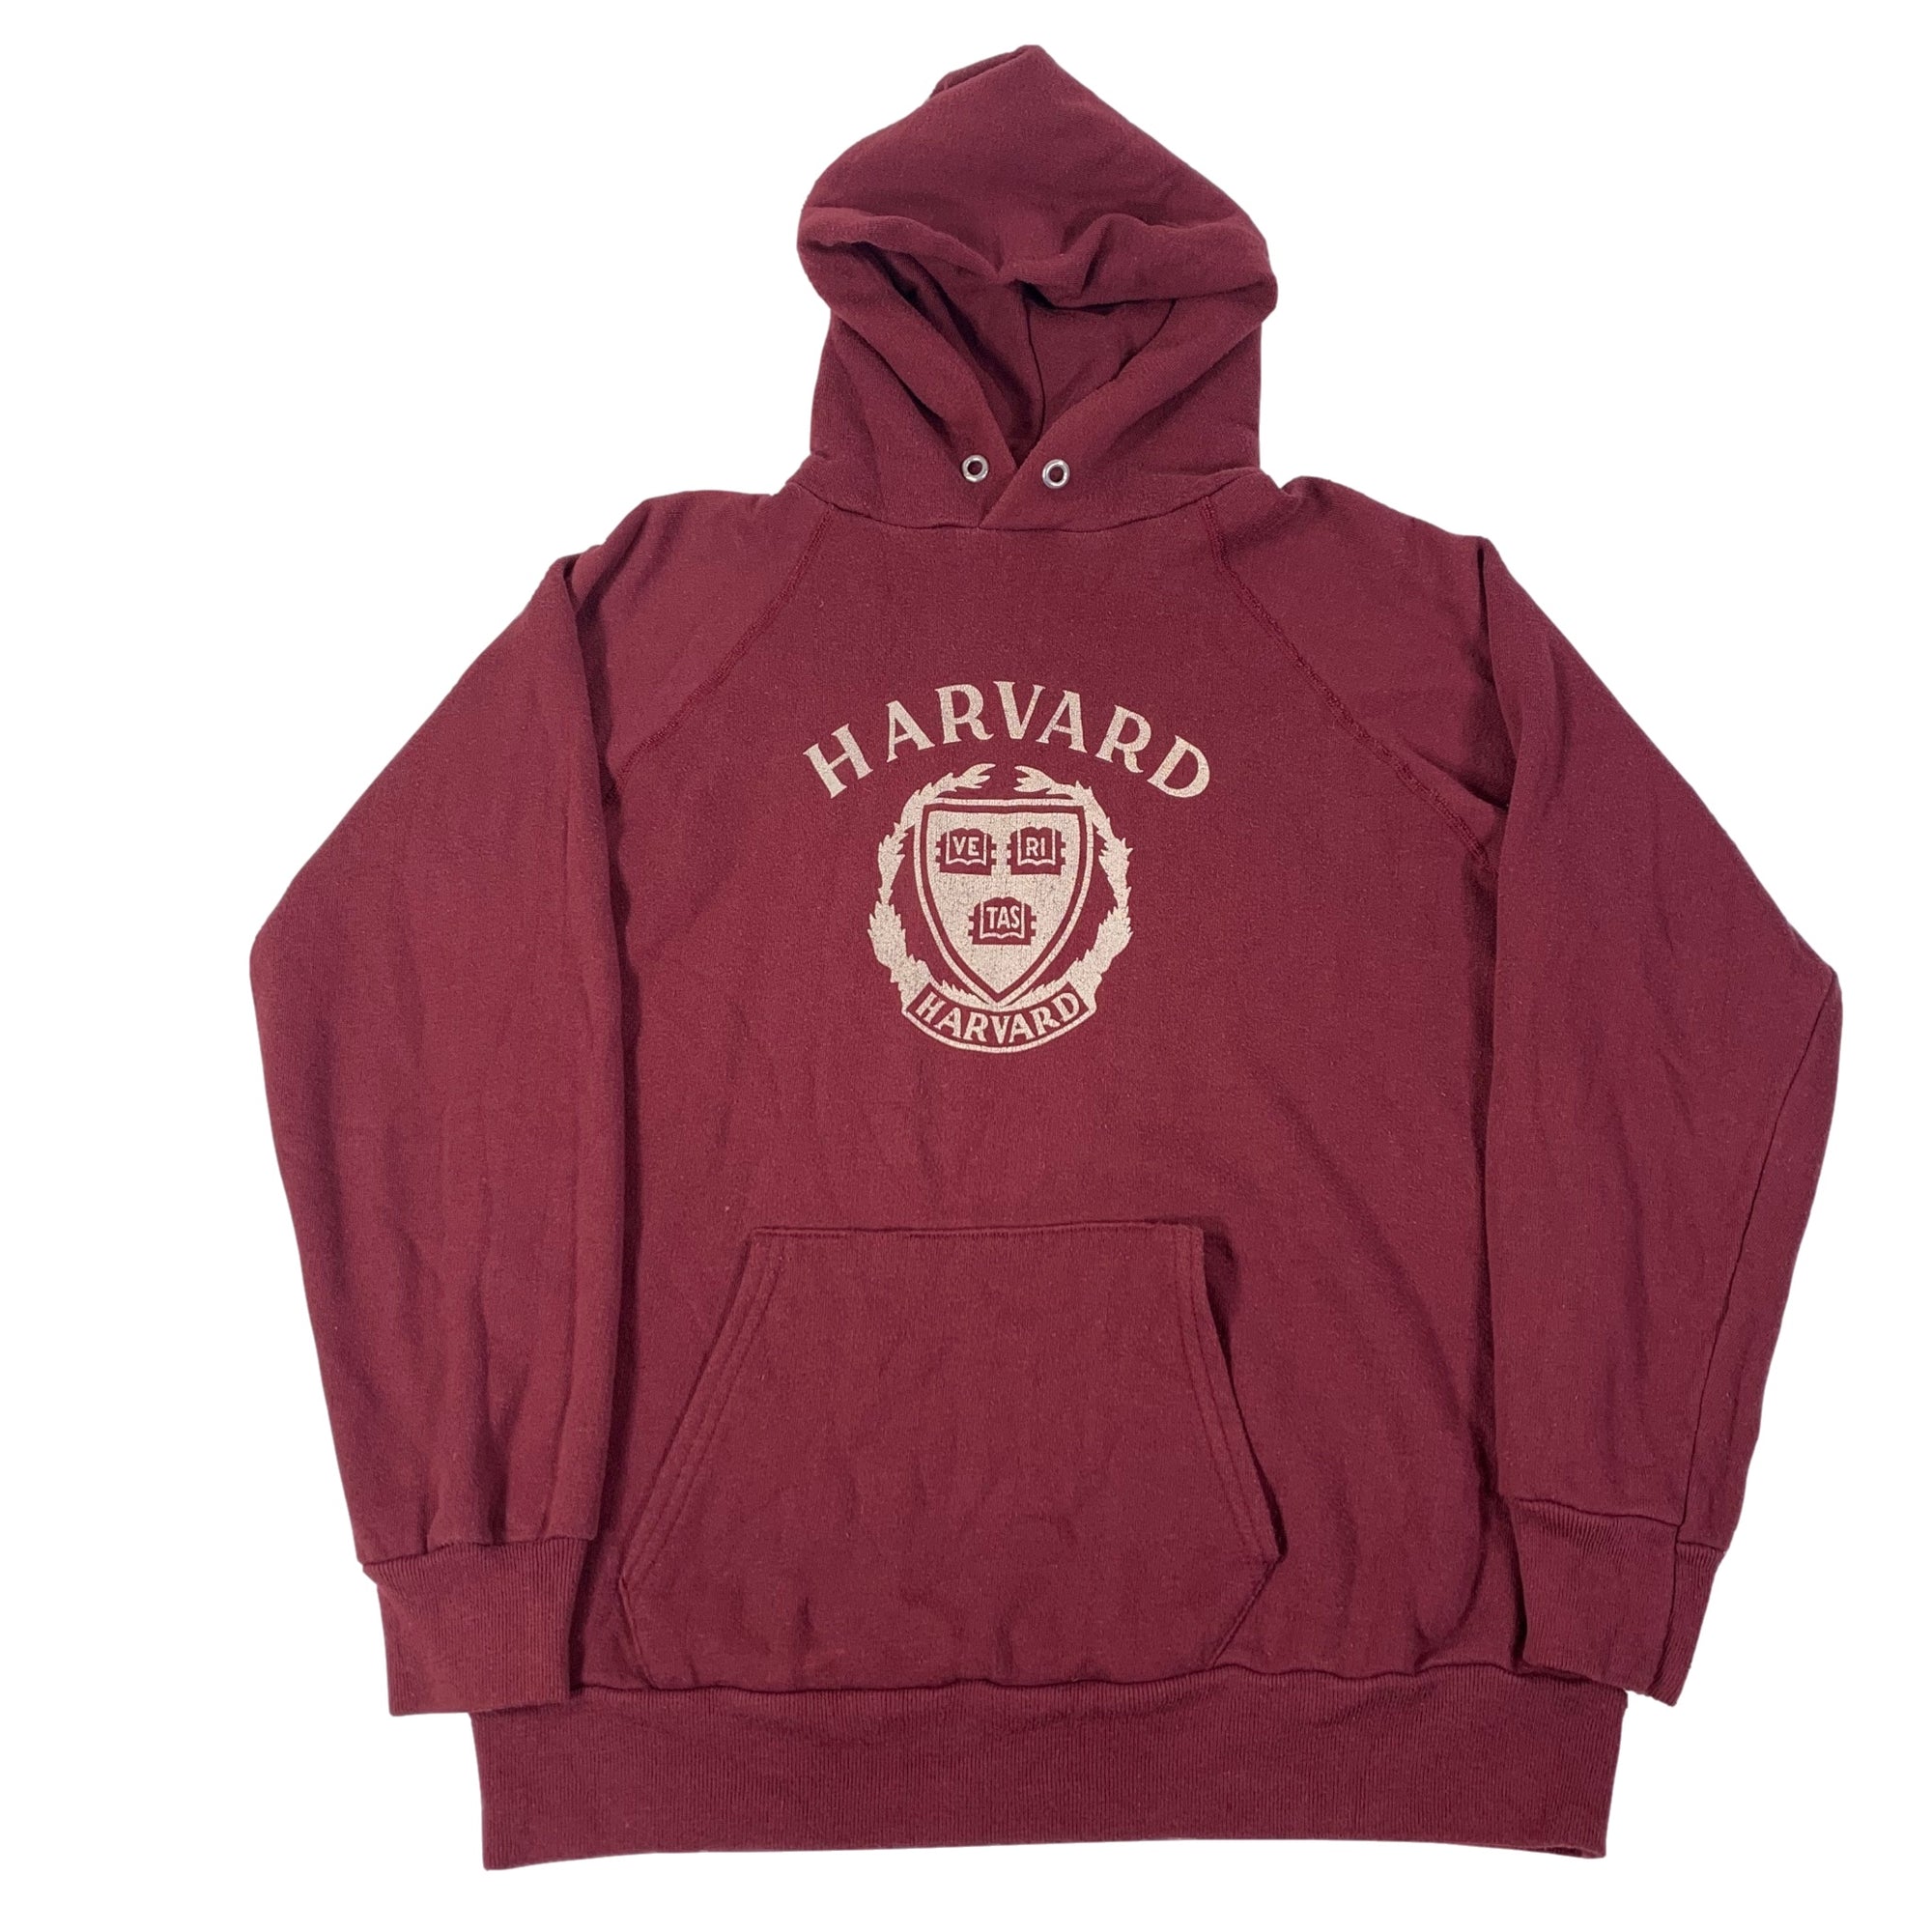 Vintage Champion "Harvard University" Pullover Sweatshirt - jointcustodydc